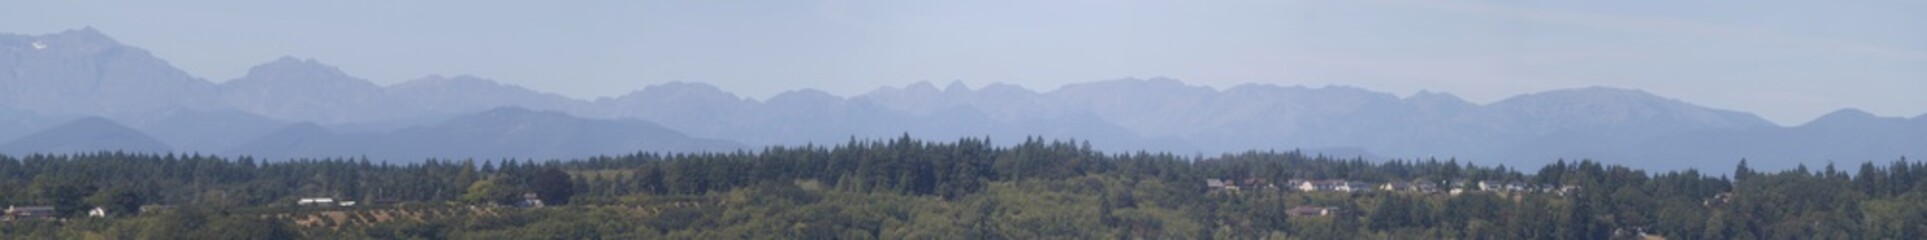 Large Mountain Panorama